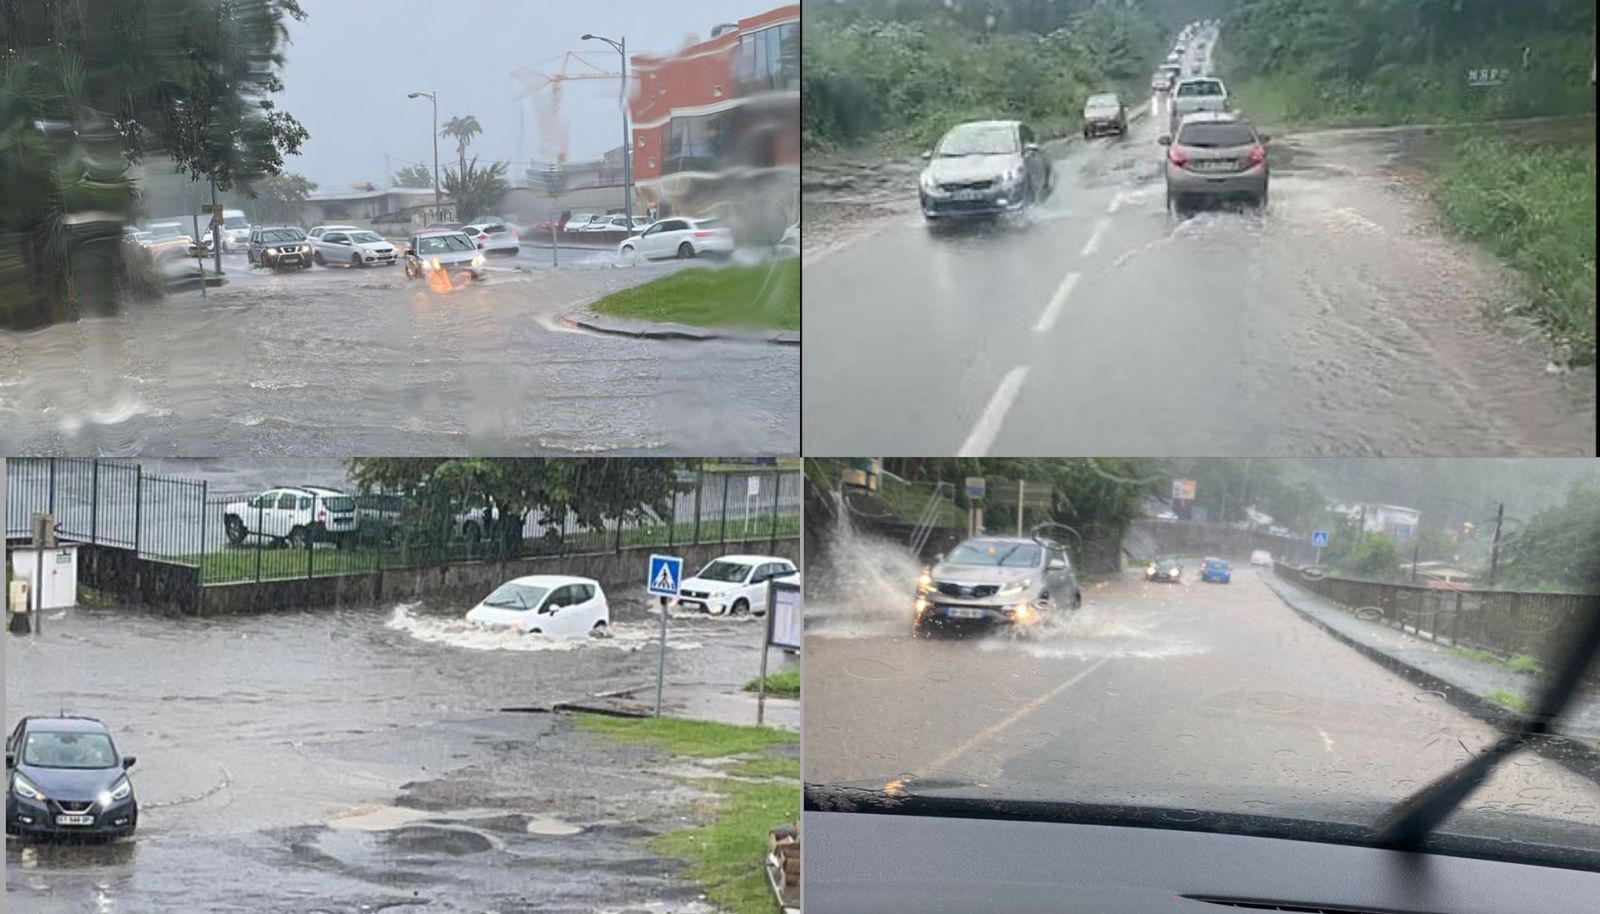     Beaucoup d'eau sur les routes de Martinique au passage d'une forte onde tropicale

